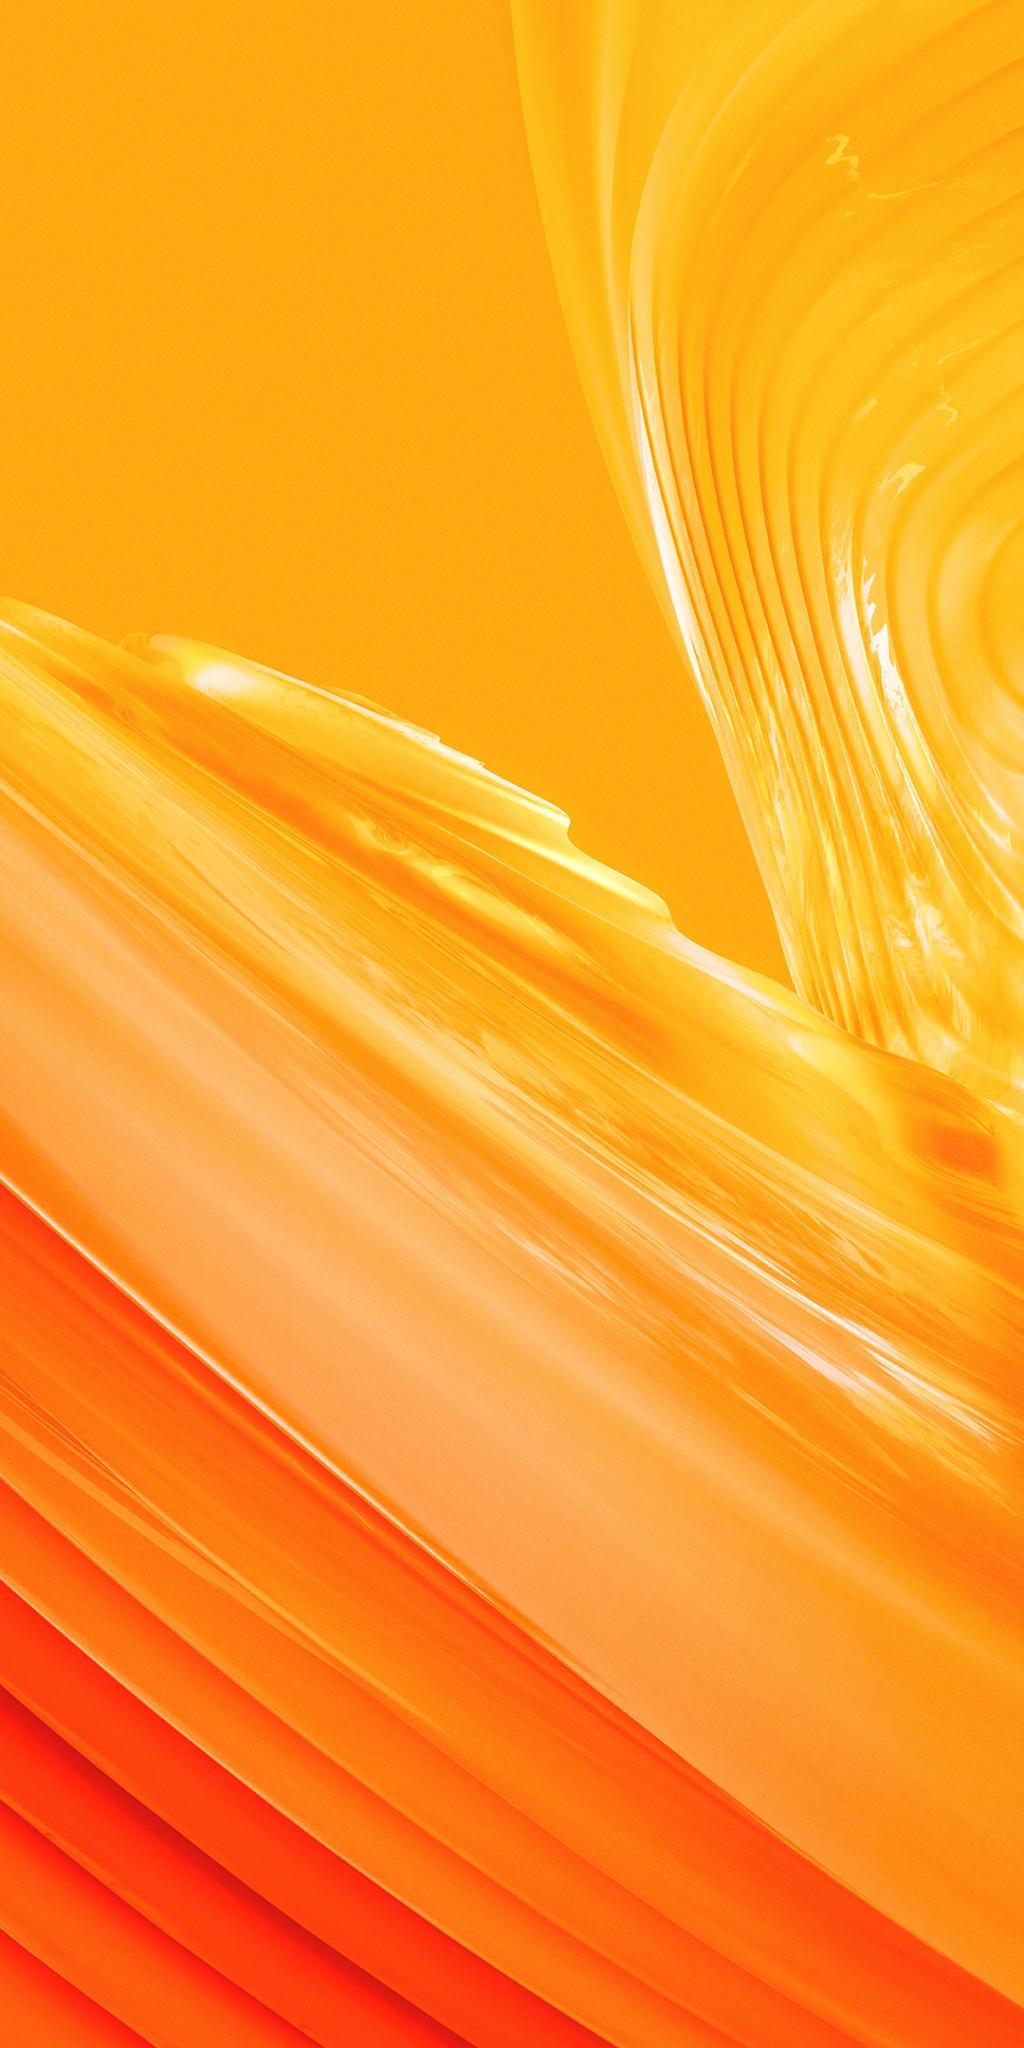 ワンプラス5t ワンアメタタリヒカル飲料大手の壁紙プラス5トン 流体システムは オレンジ色の壁紙 ロック画面の画像 Hdの携帯電話の壁紙 ロゴが付属しています 壁紙